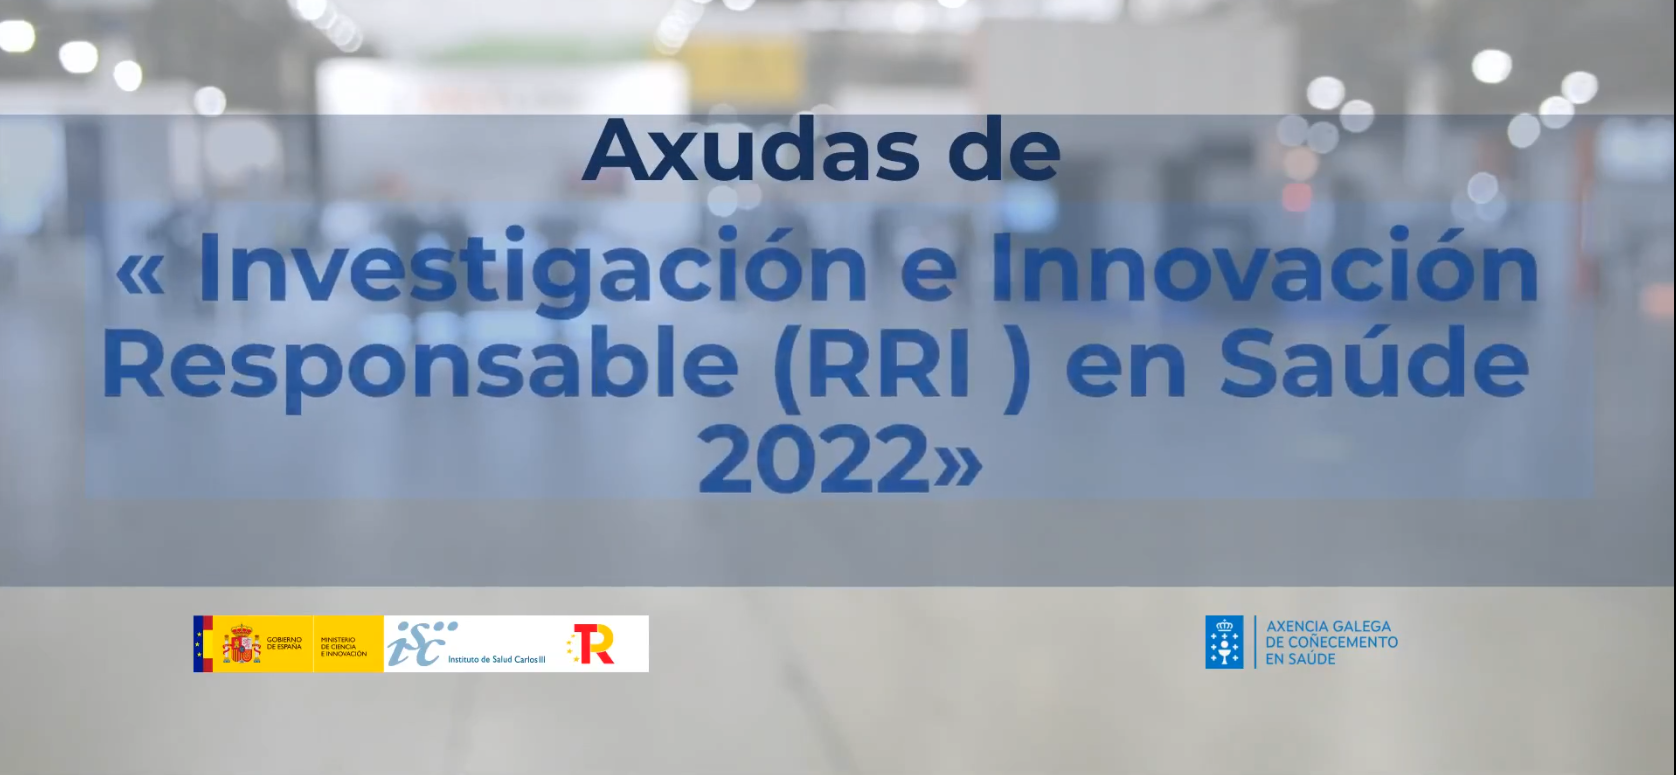  Investigación e Innovación Responsable en Saúde 2022 (RRI)